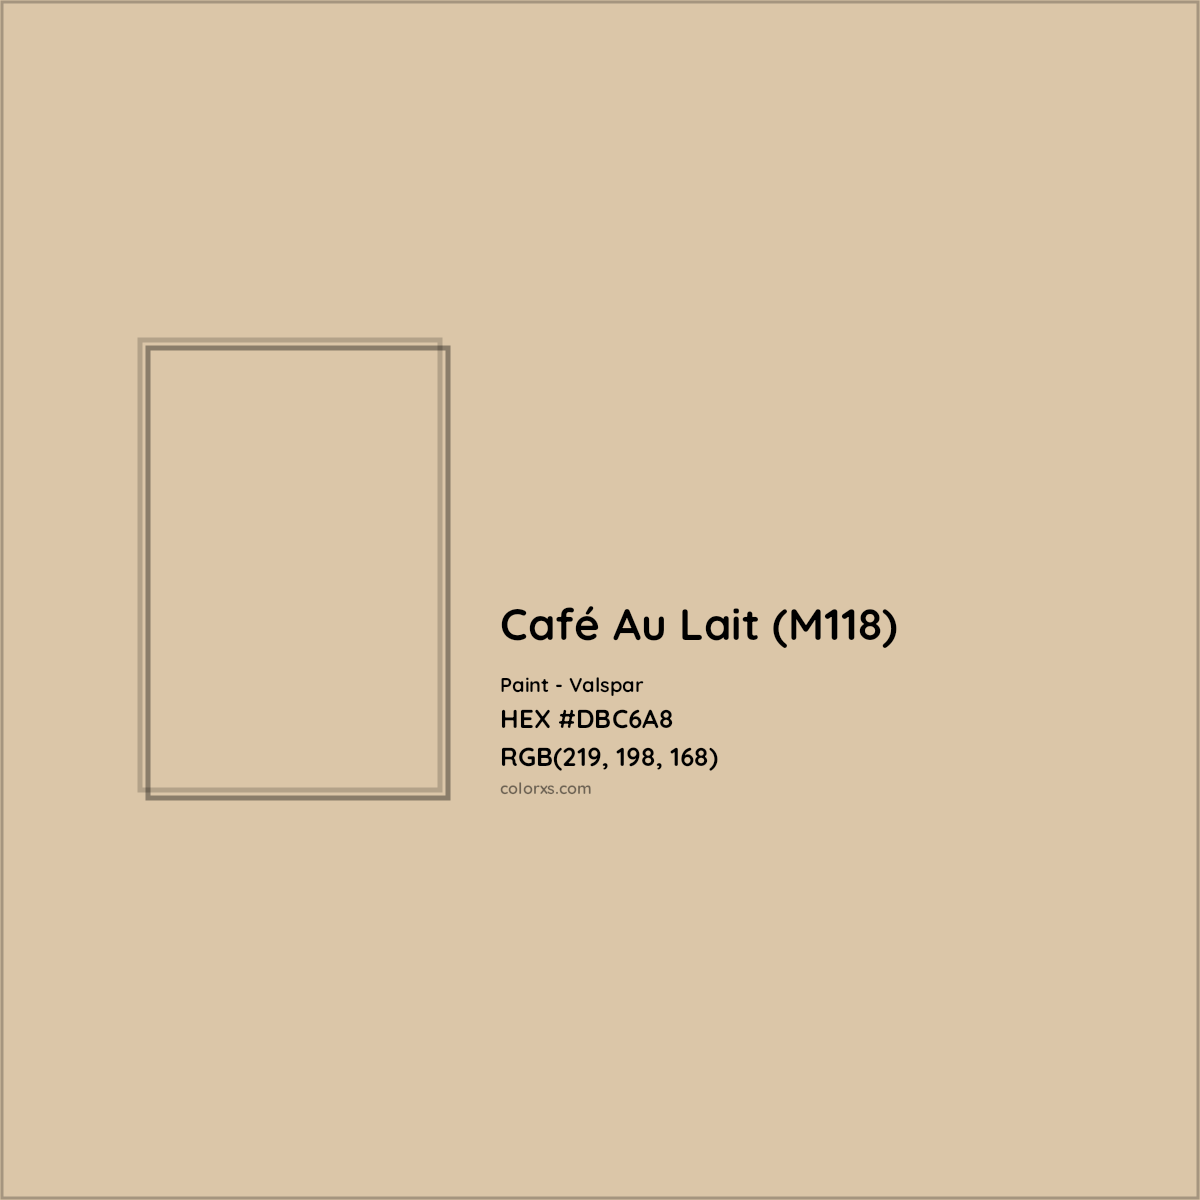 HEX #DBC6A8 Café Au Lait (M118) Paint Valspar - Color Code